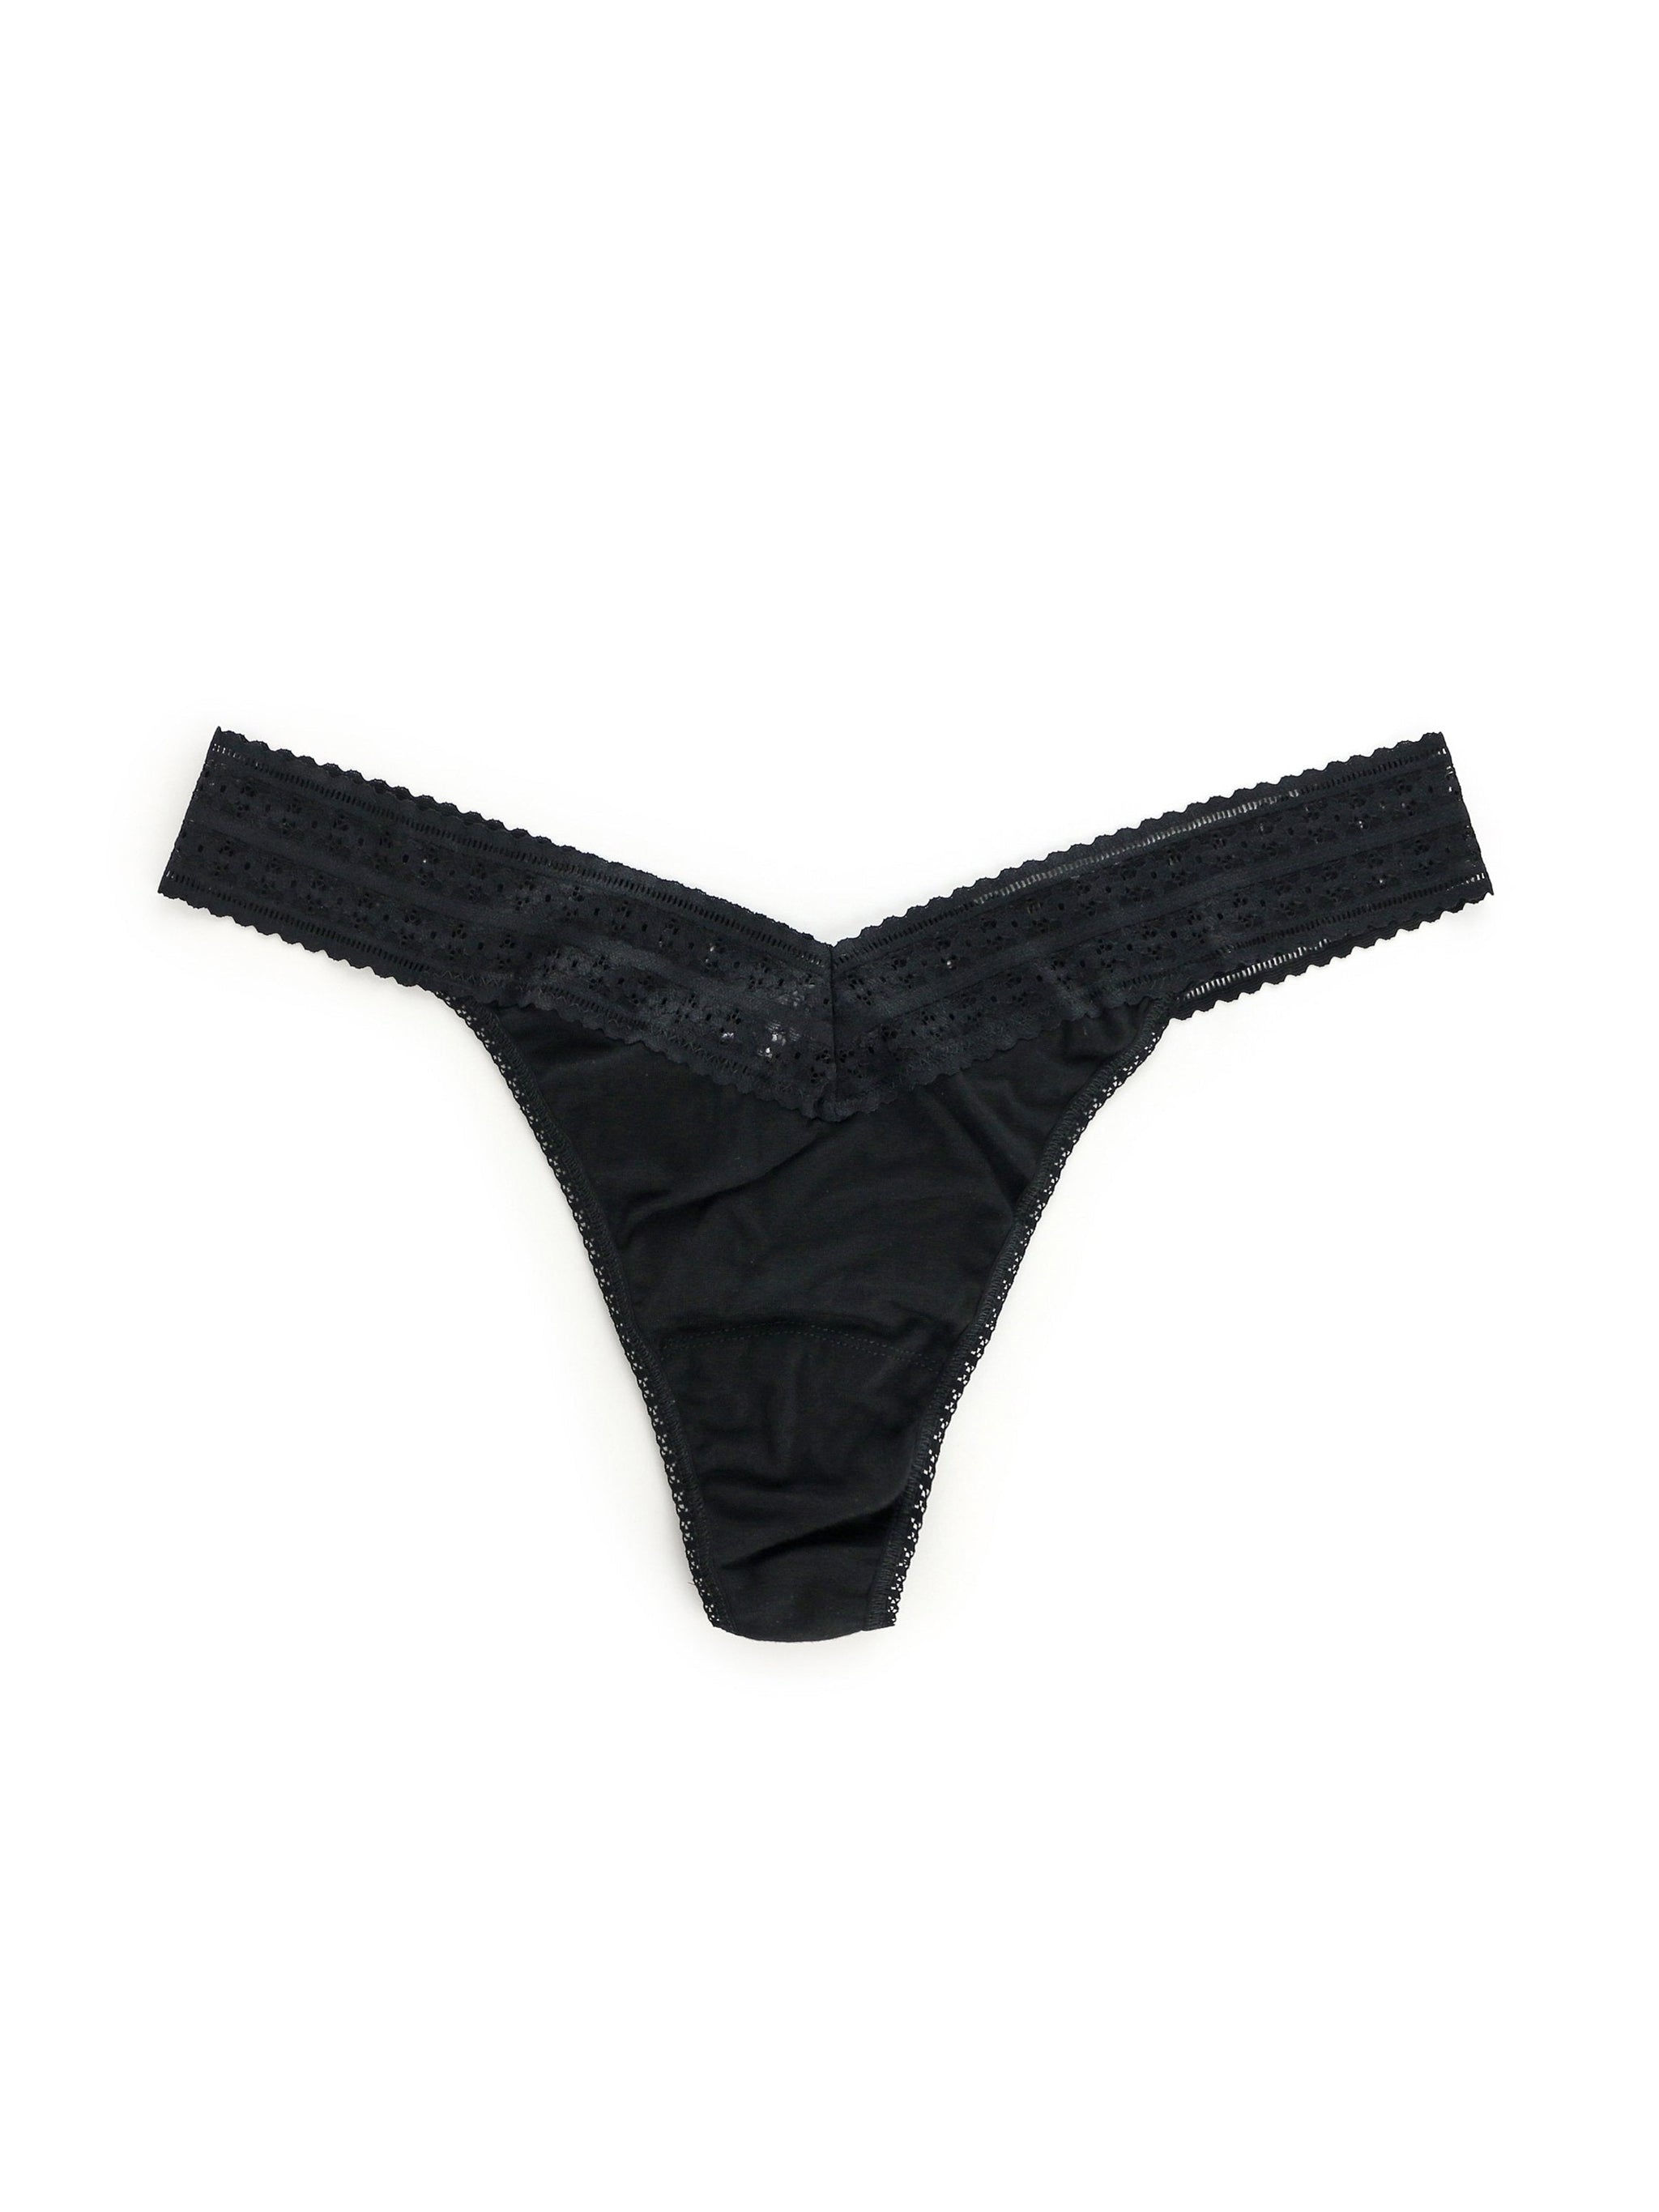 Original Rise Thong Panties